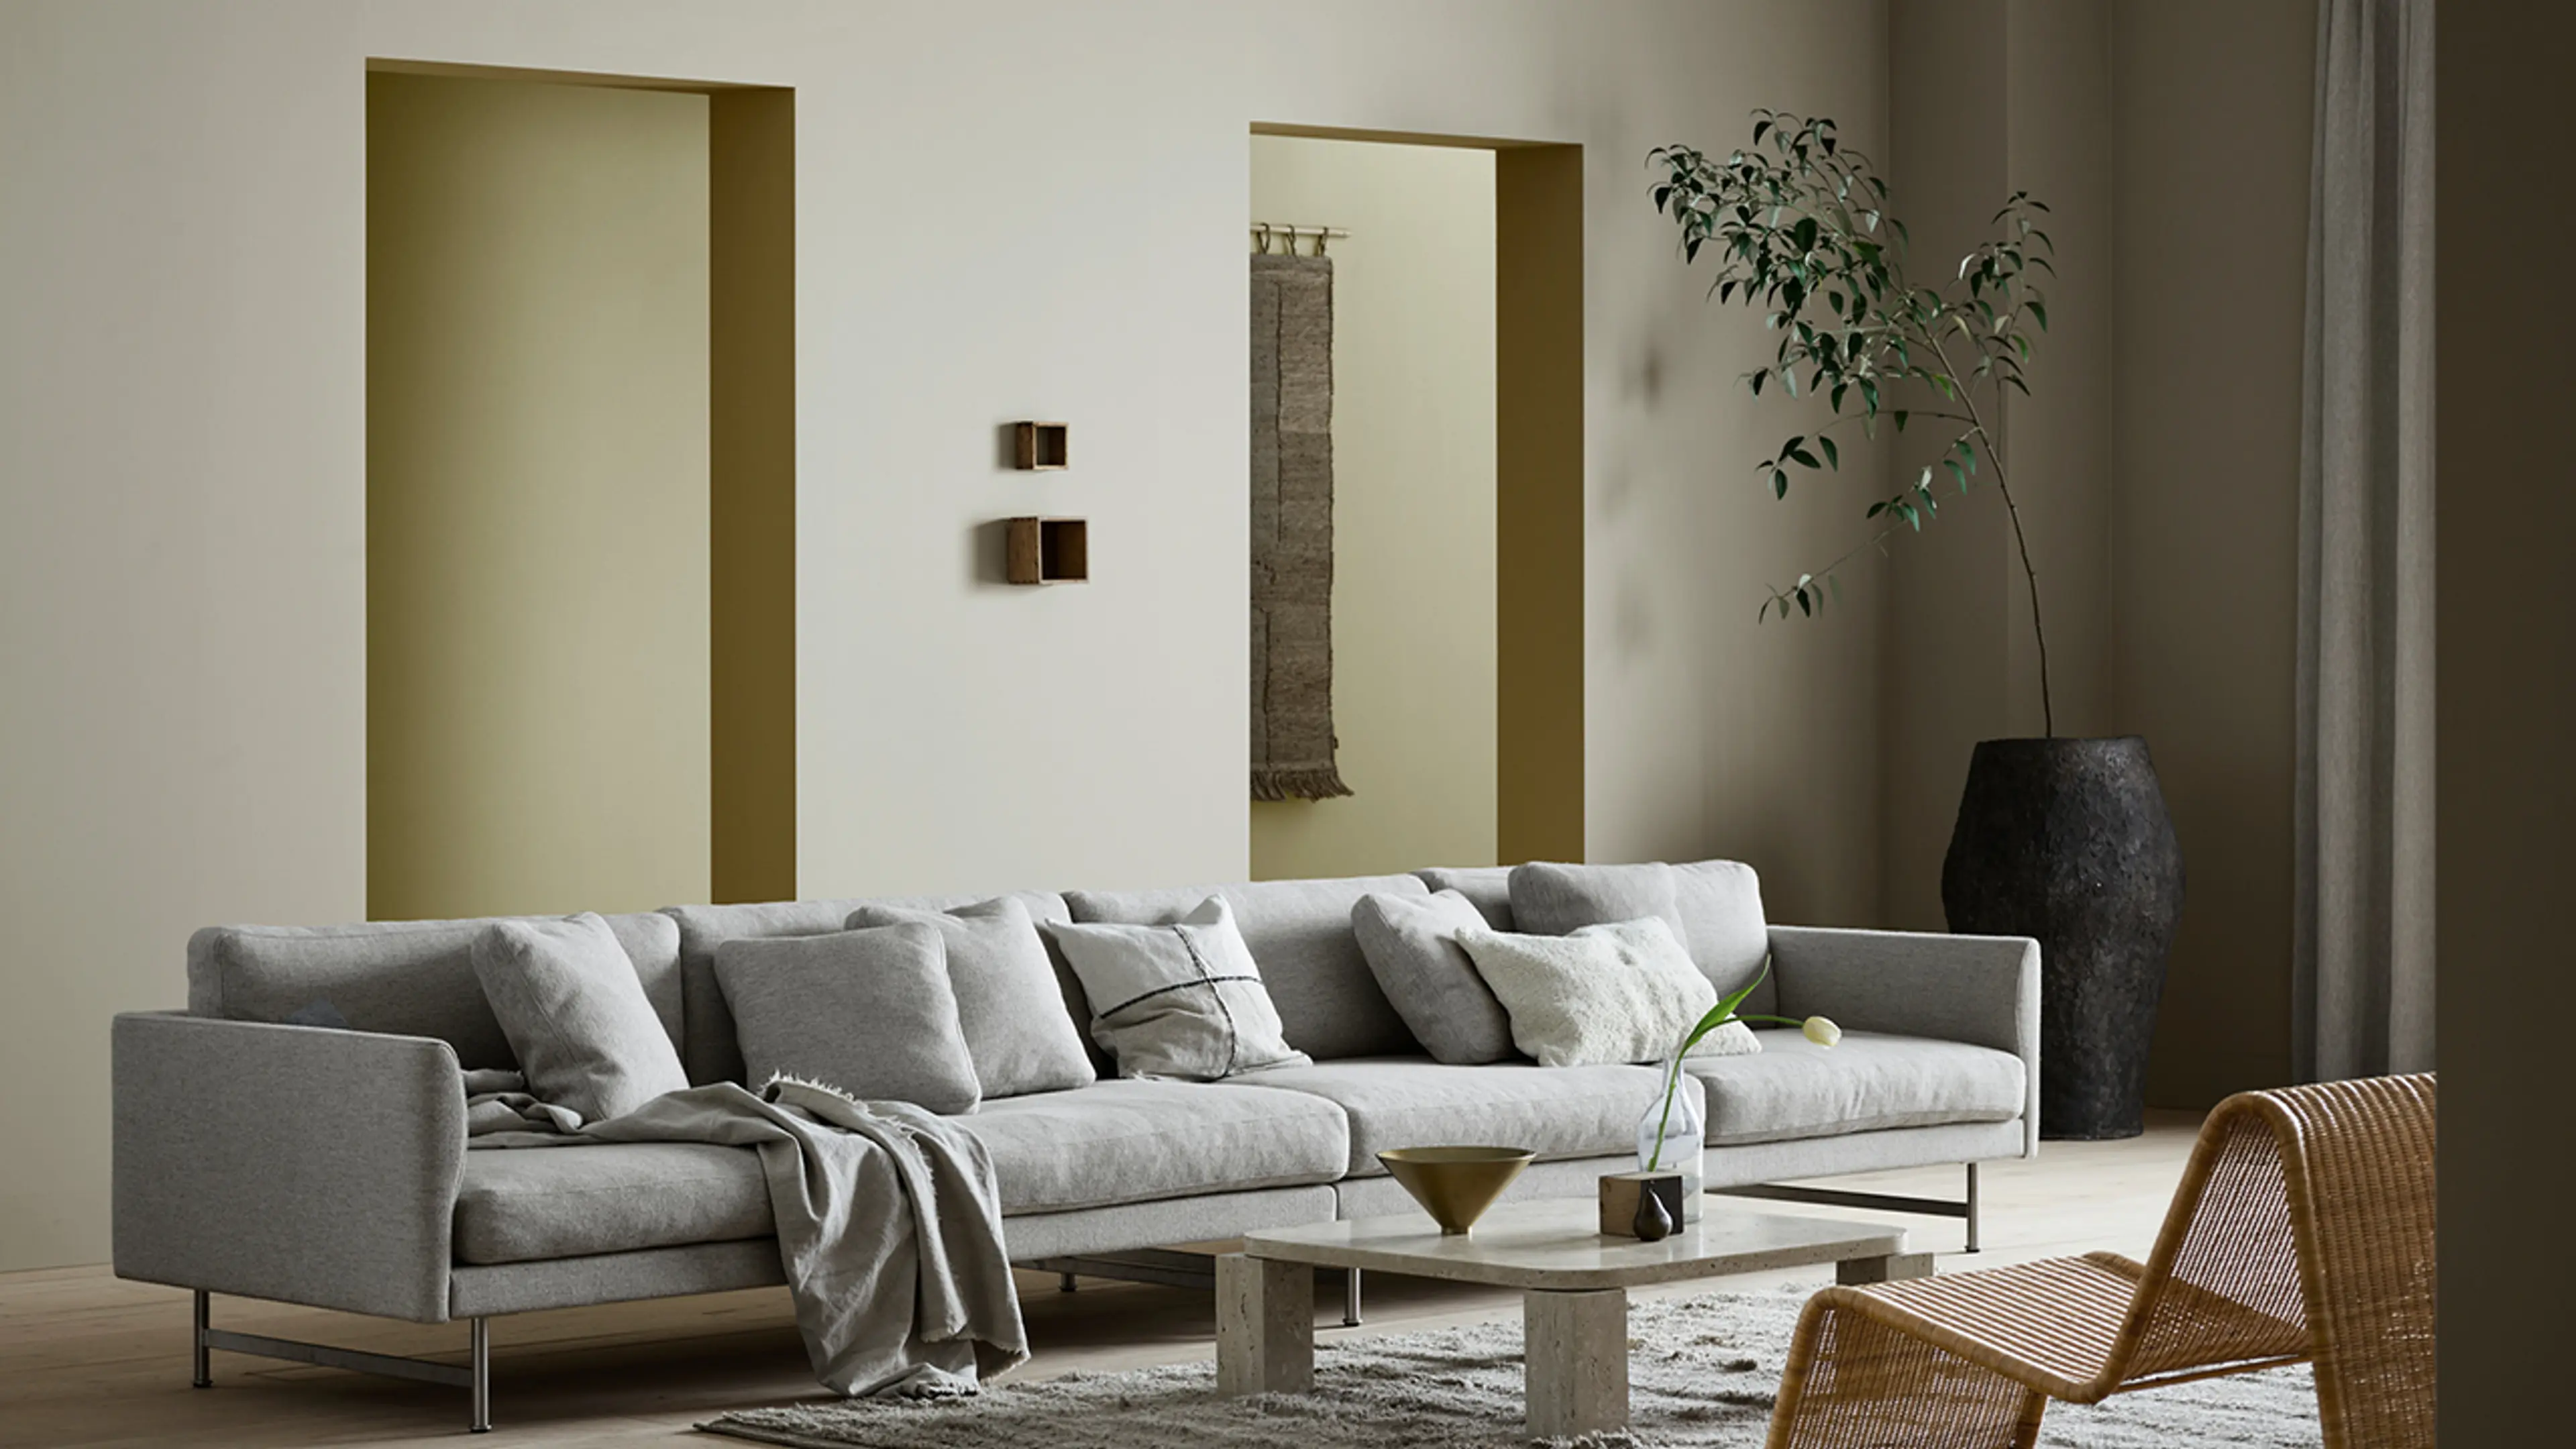 Stueinteriør med stor sofa og nøytrale farger i beige, dus gul og grå på veggene.